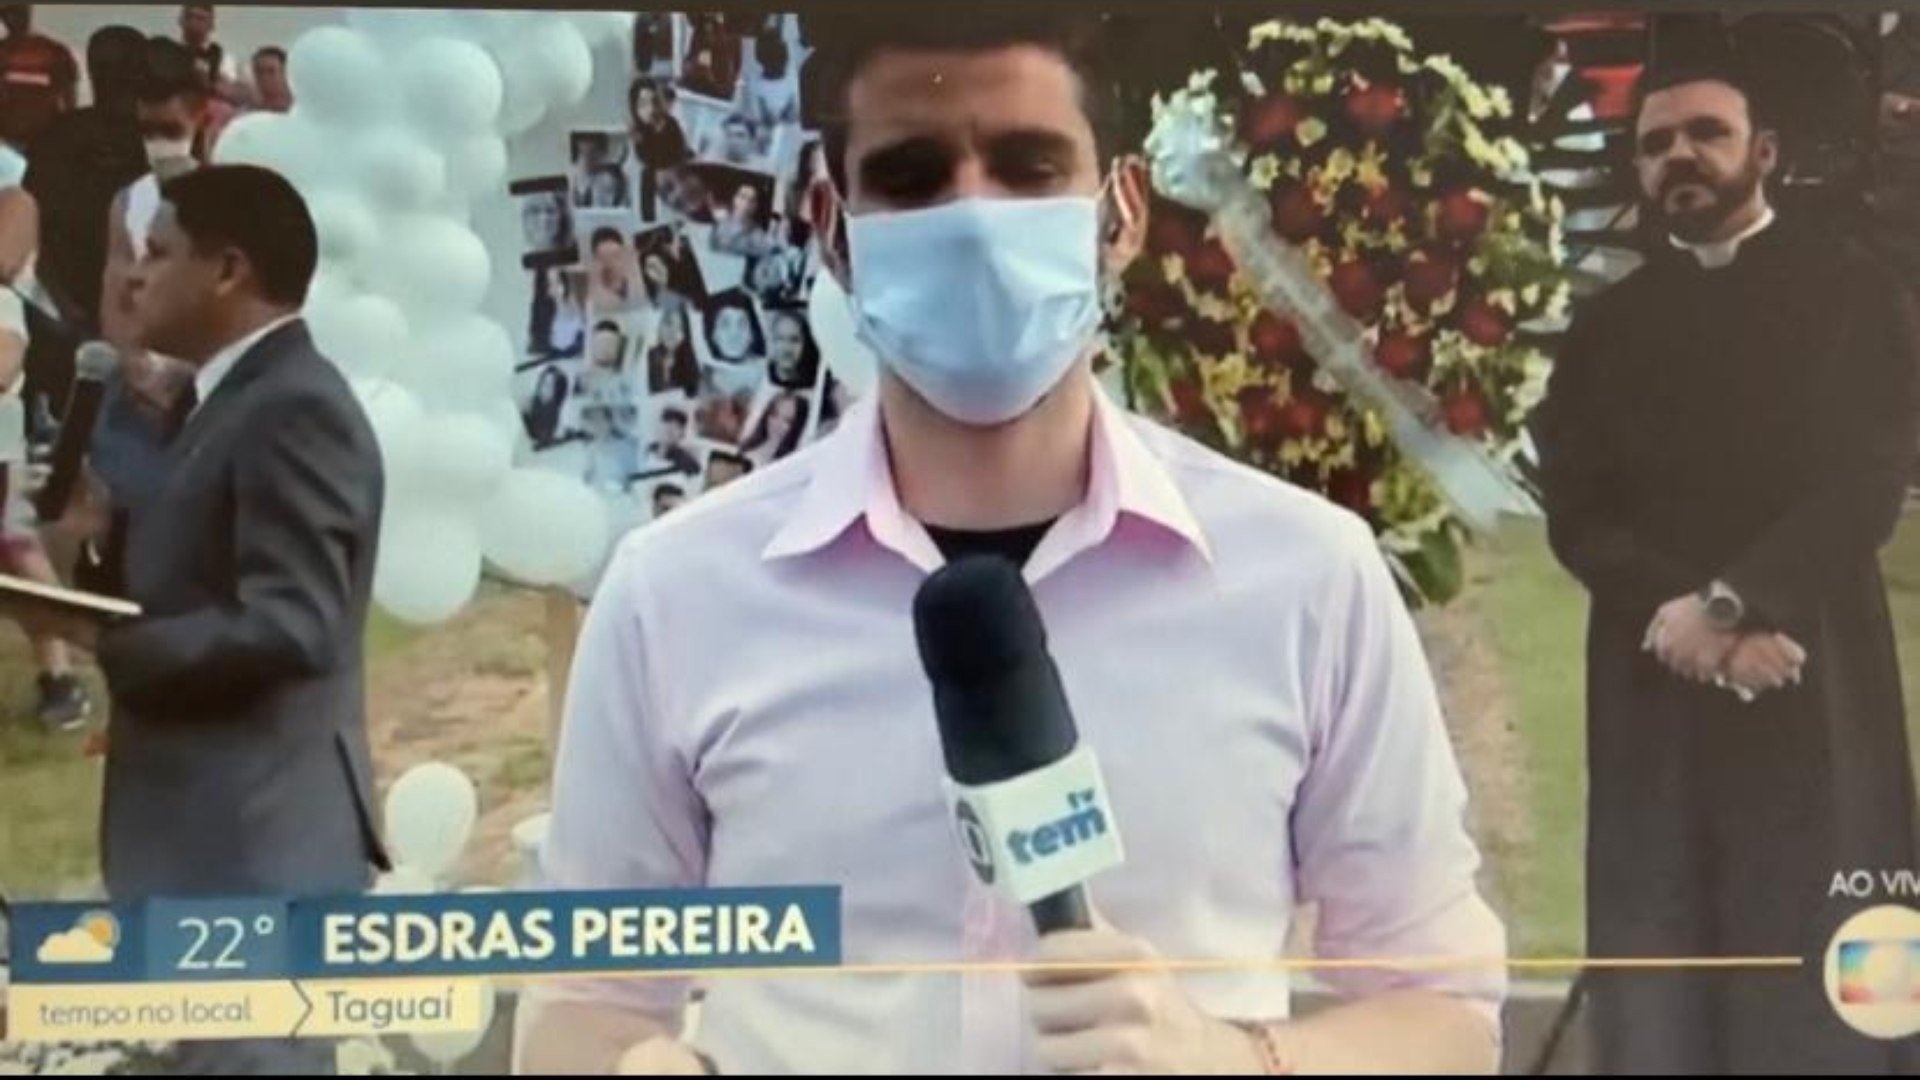 Vídeo! Repórter da Globo se emociona ao vivo ao falar de tragédia em Taguaí  Jornal MEIA HORA - Celebridades e TV